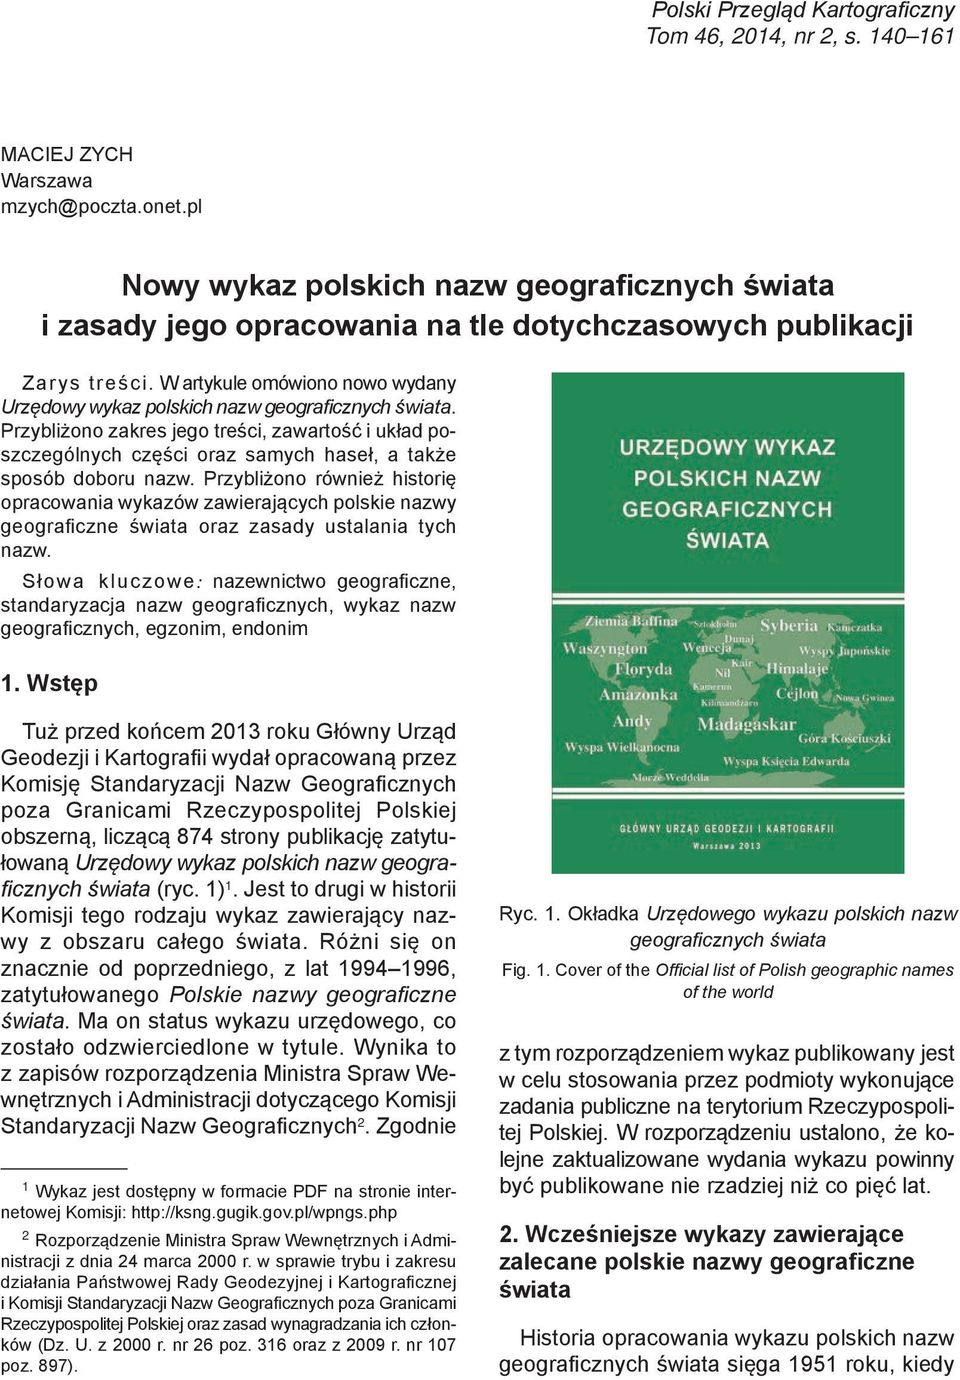 W artykule omówiono nowo wydany Urzędowy wykaz polskich nazw geograficznych świata.